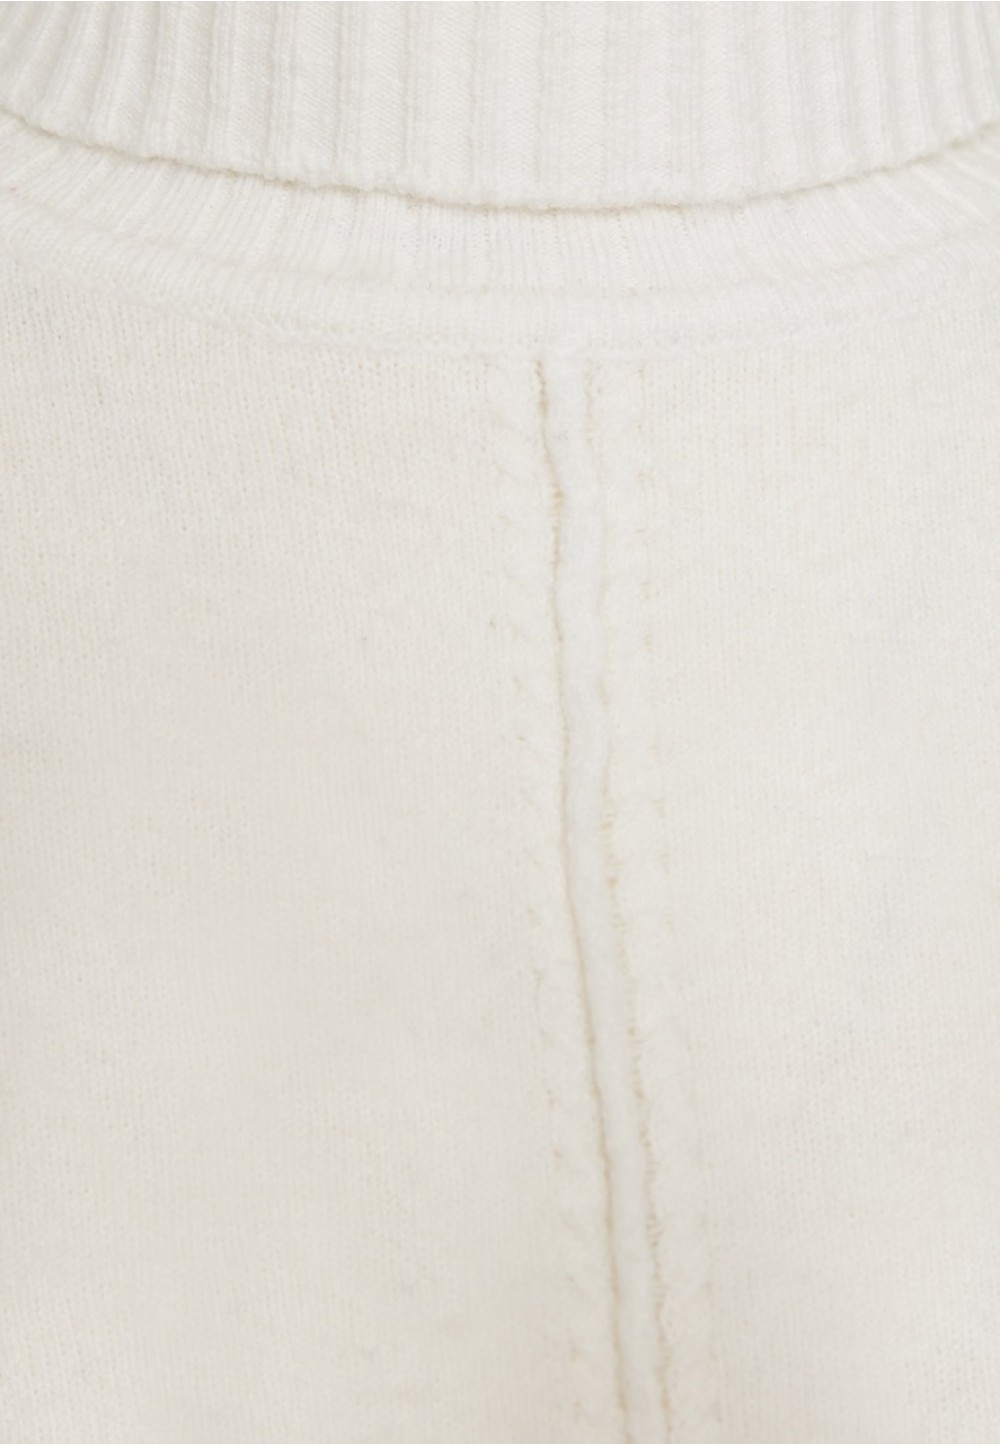 Теплий светр із горловиною у білому кольорі